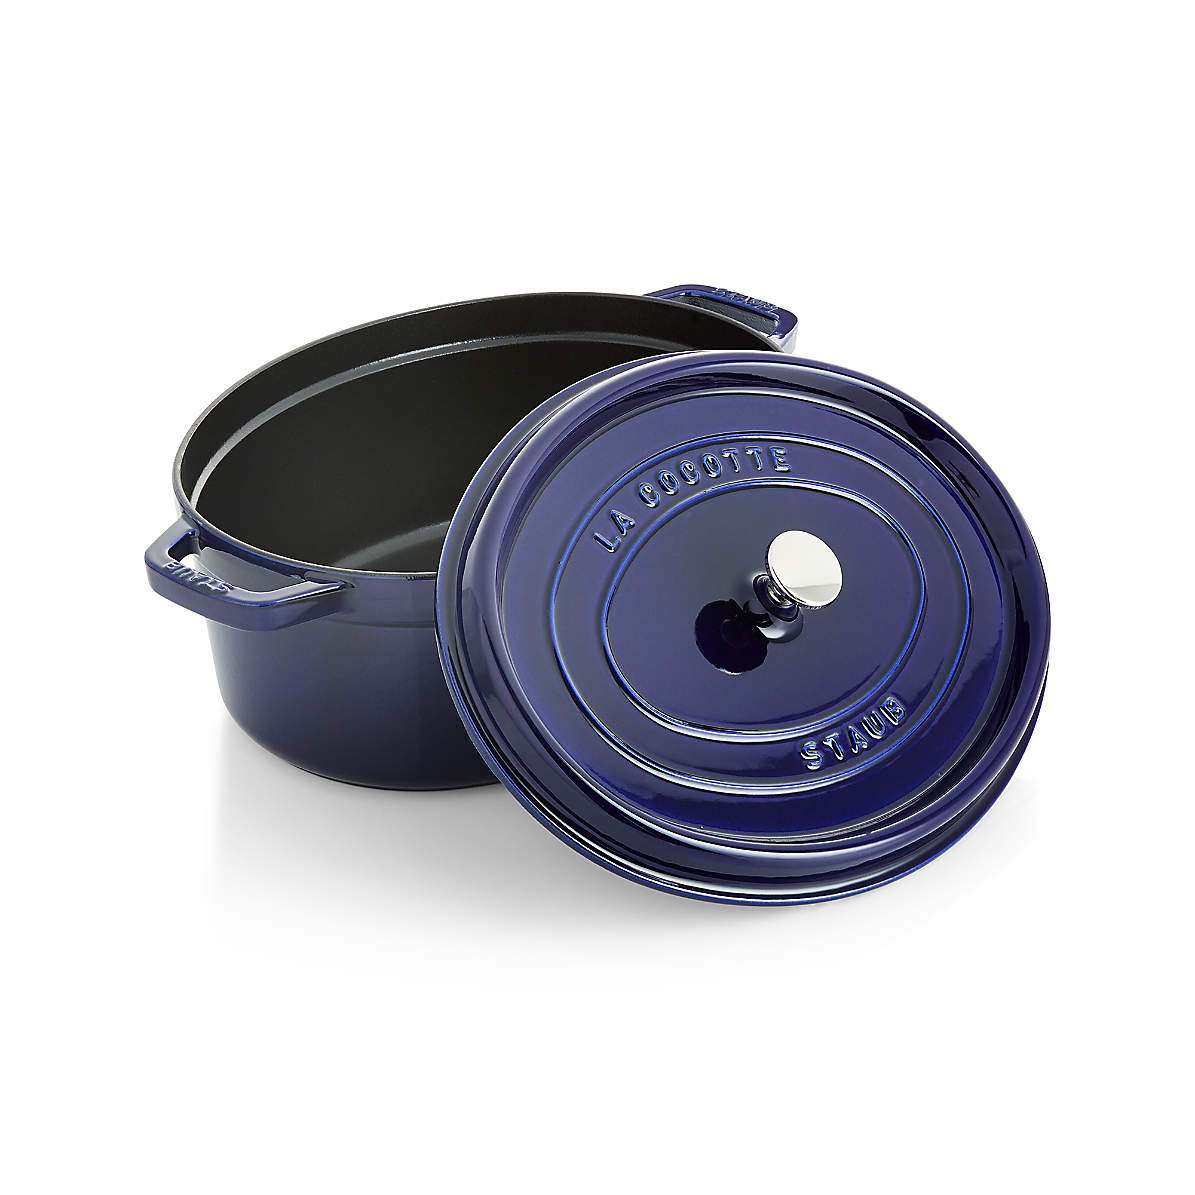 Staub 9 Qt. Cast Iron Round Dutch Oven in Dark Blue – Premium Home Source